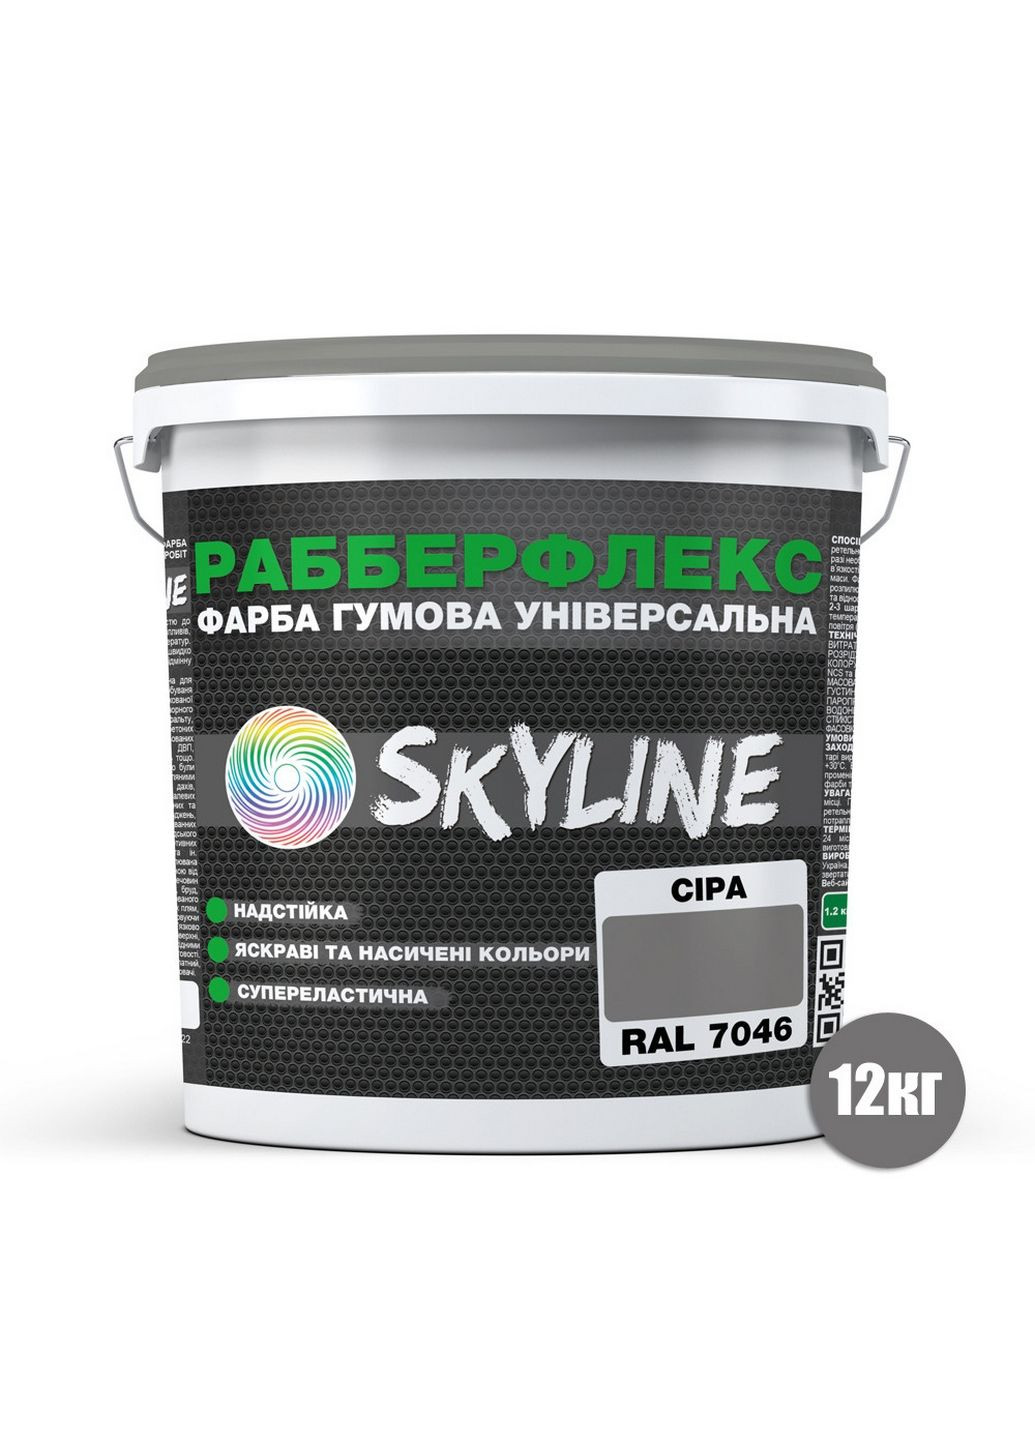 Надстійка фарба гумова супереластична «РабберФлекс» 12 кг SkyLine (283326401)